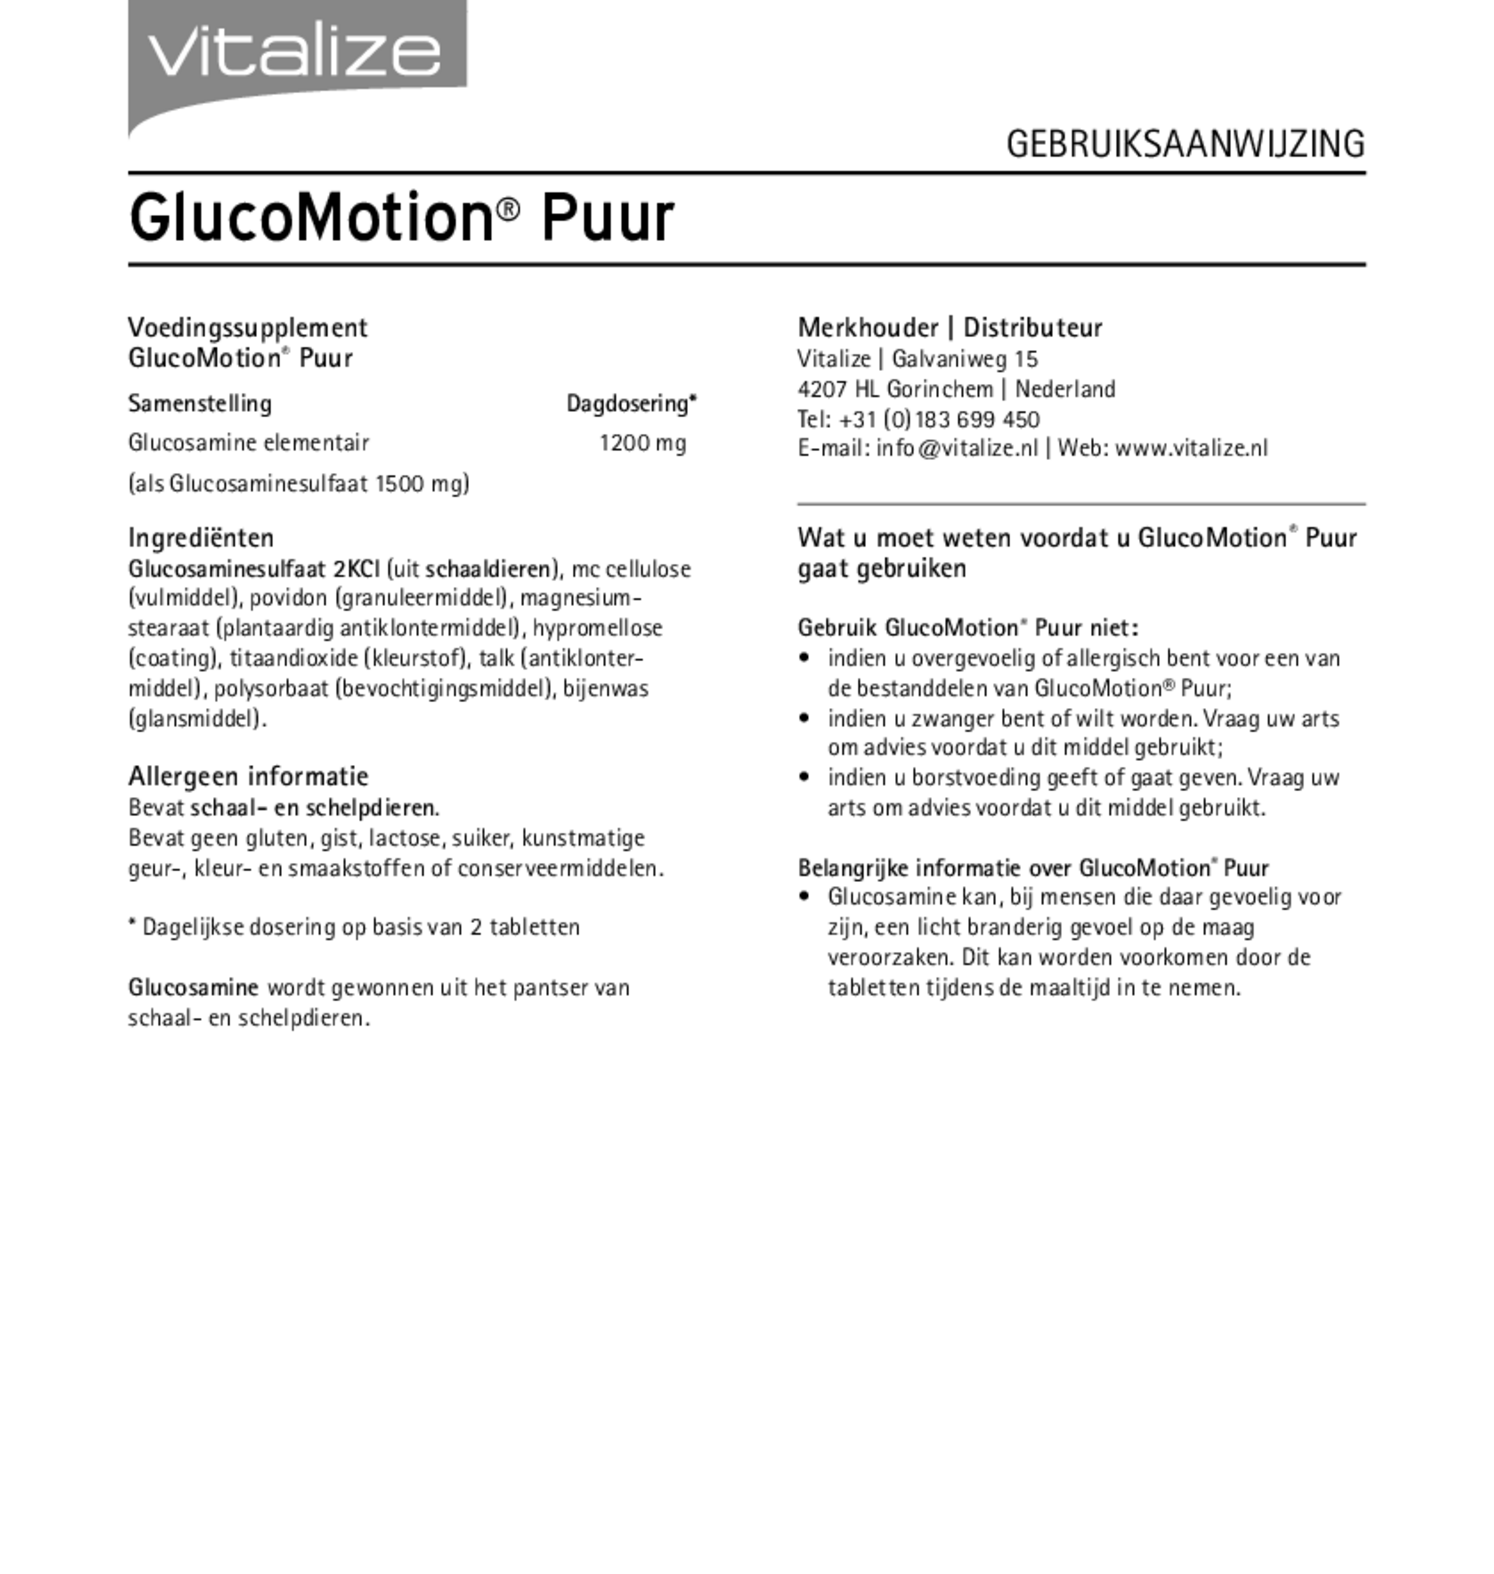 GlucoMotion Puur Tabletten afbeelding van document #1, gebruiksaanwijzing